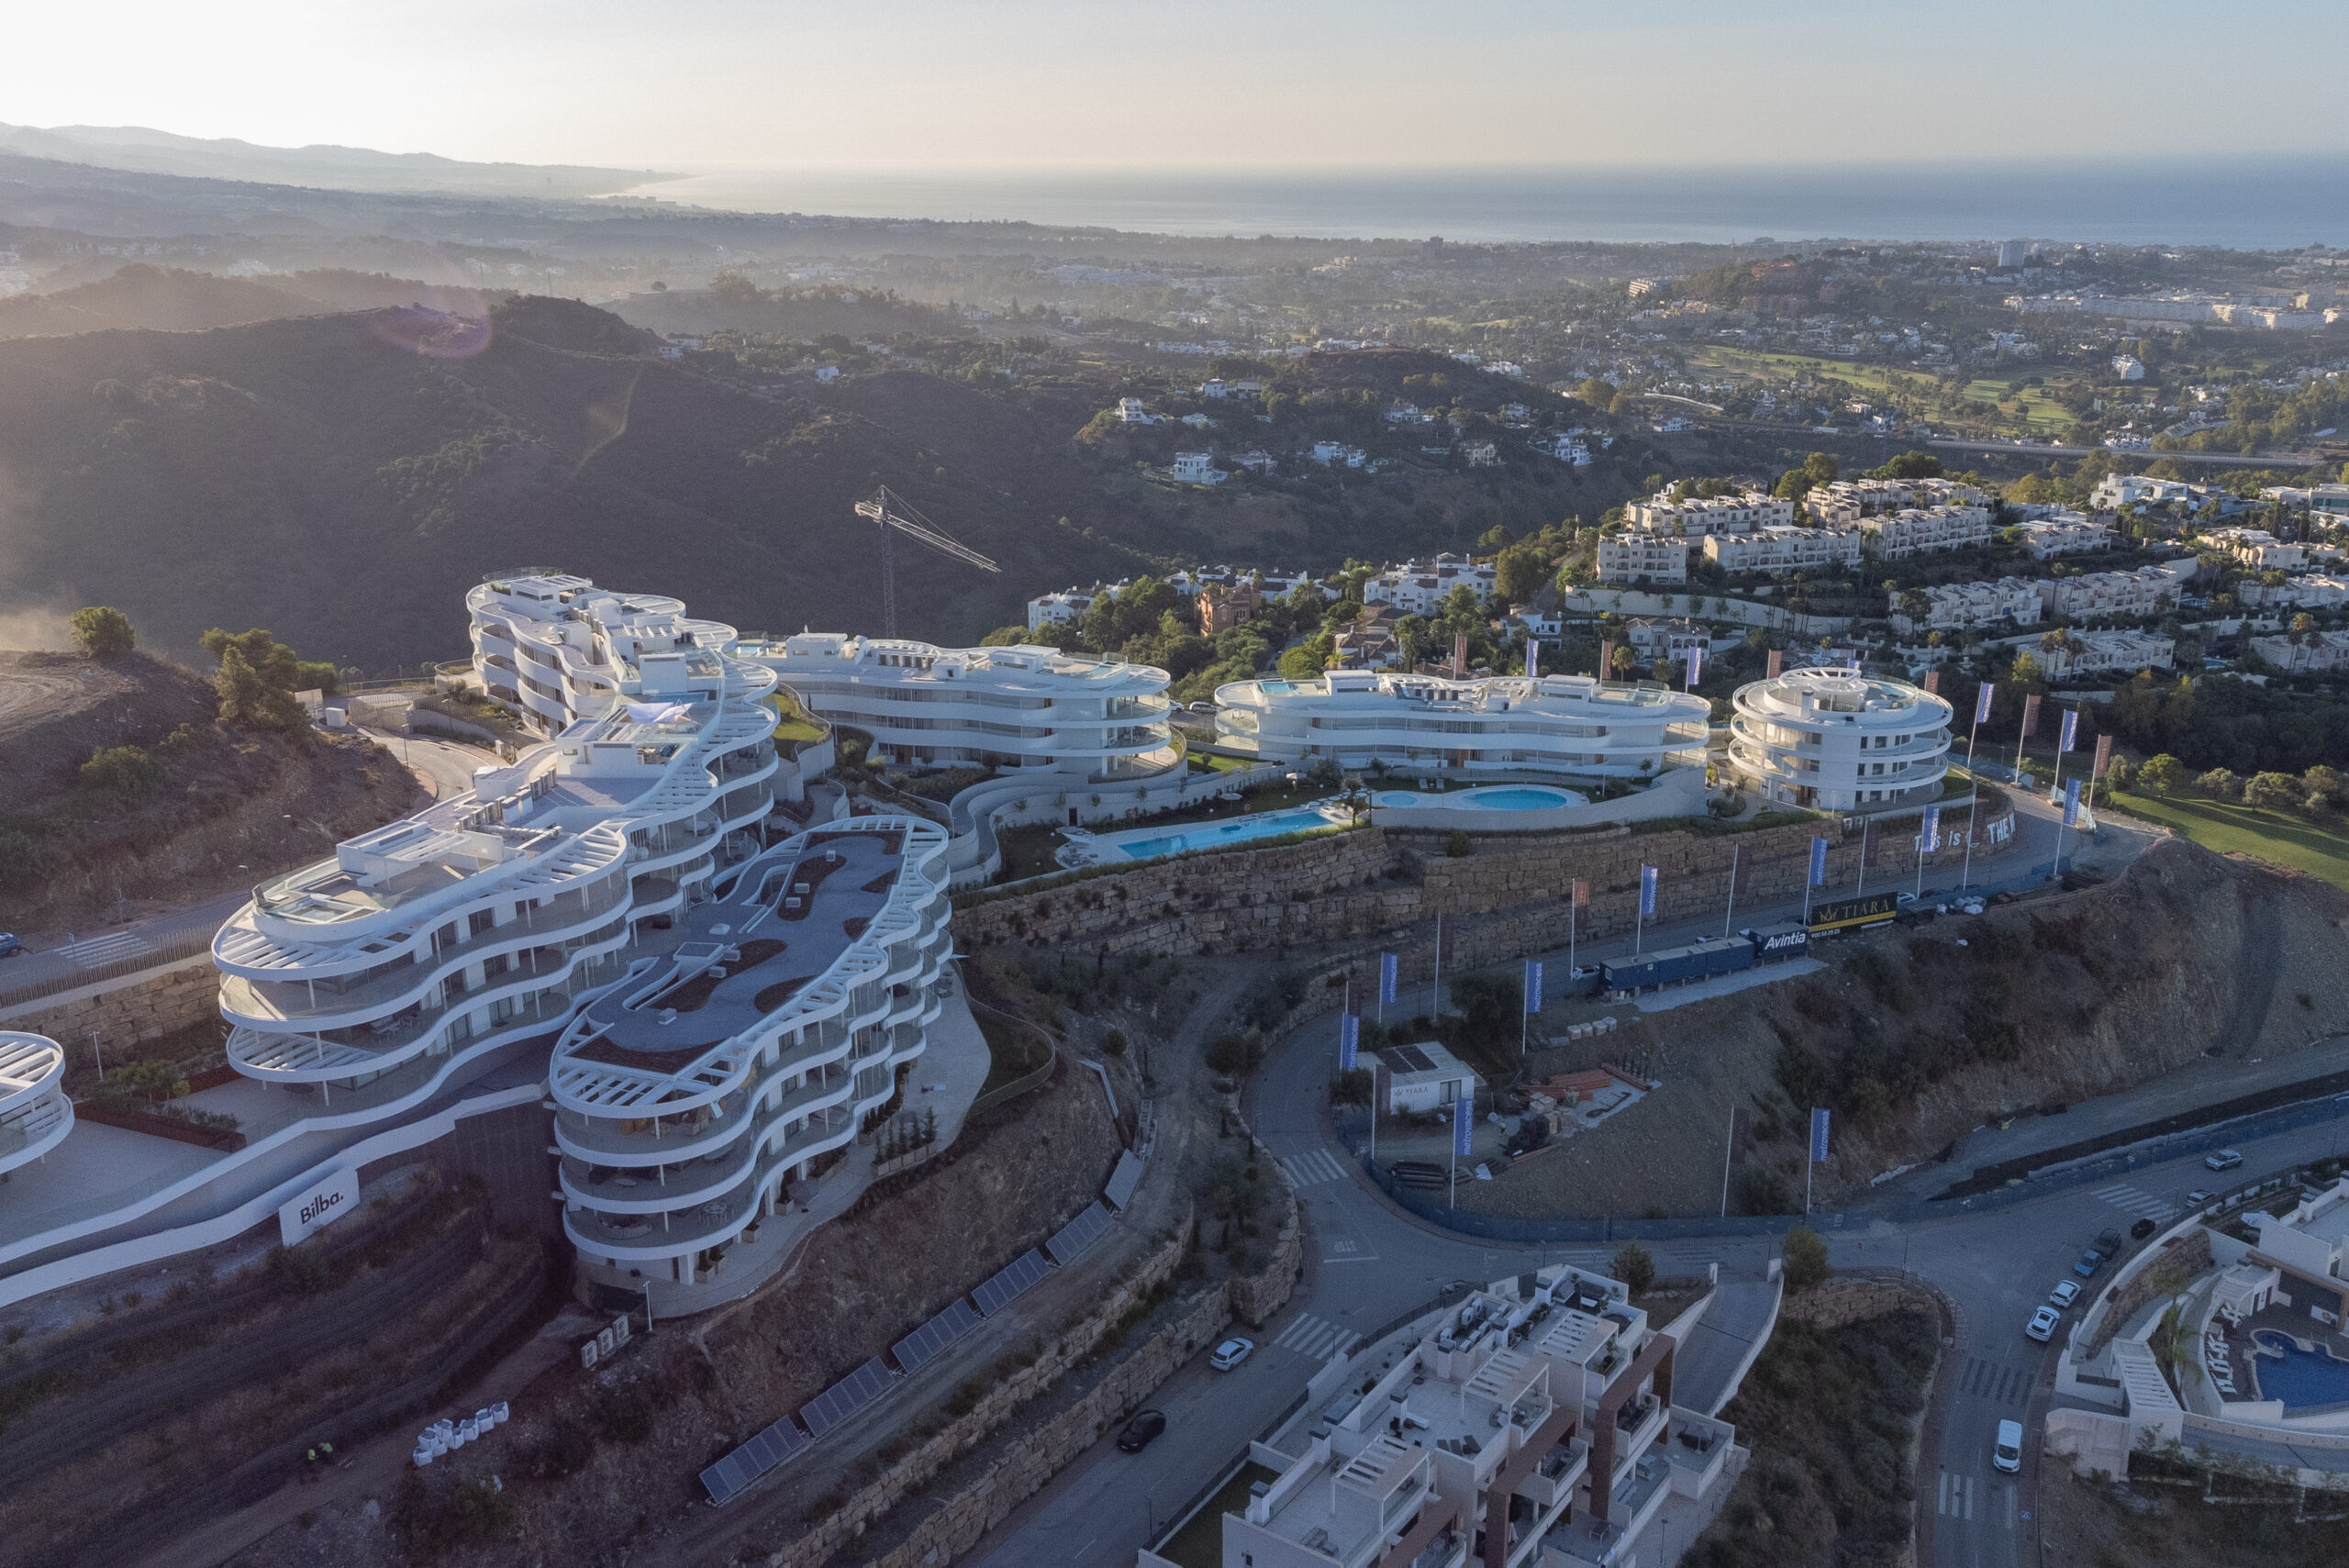 The View Marbella - apartment complex